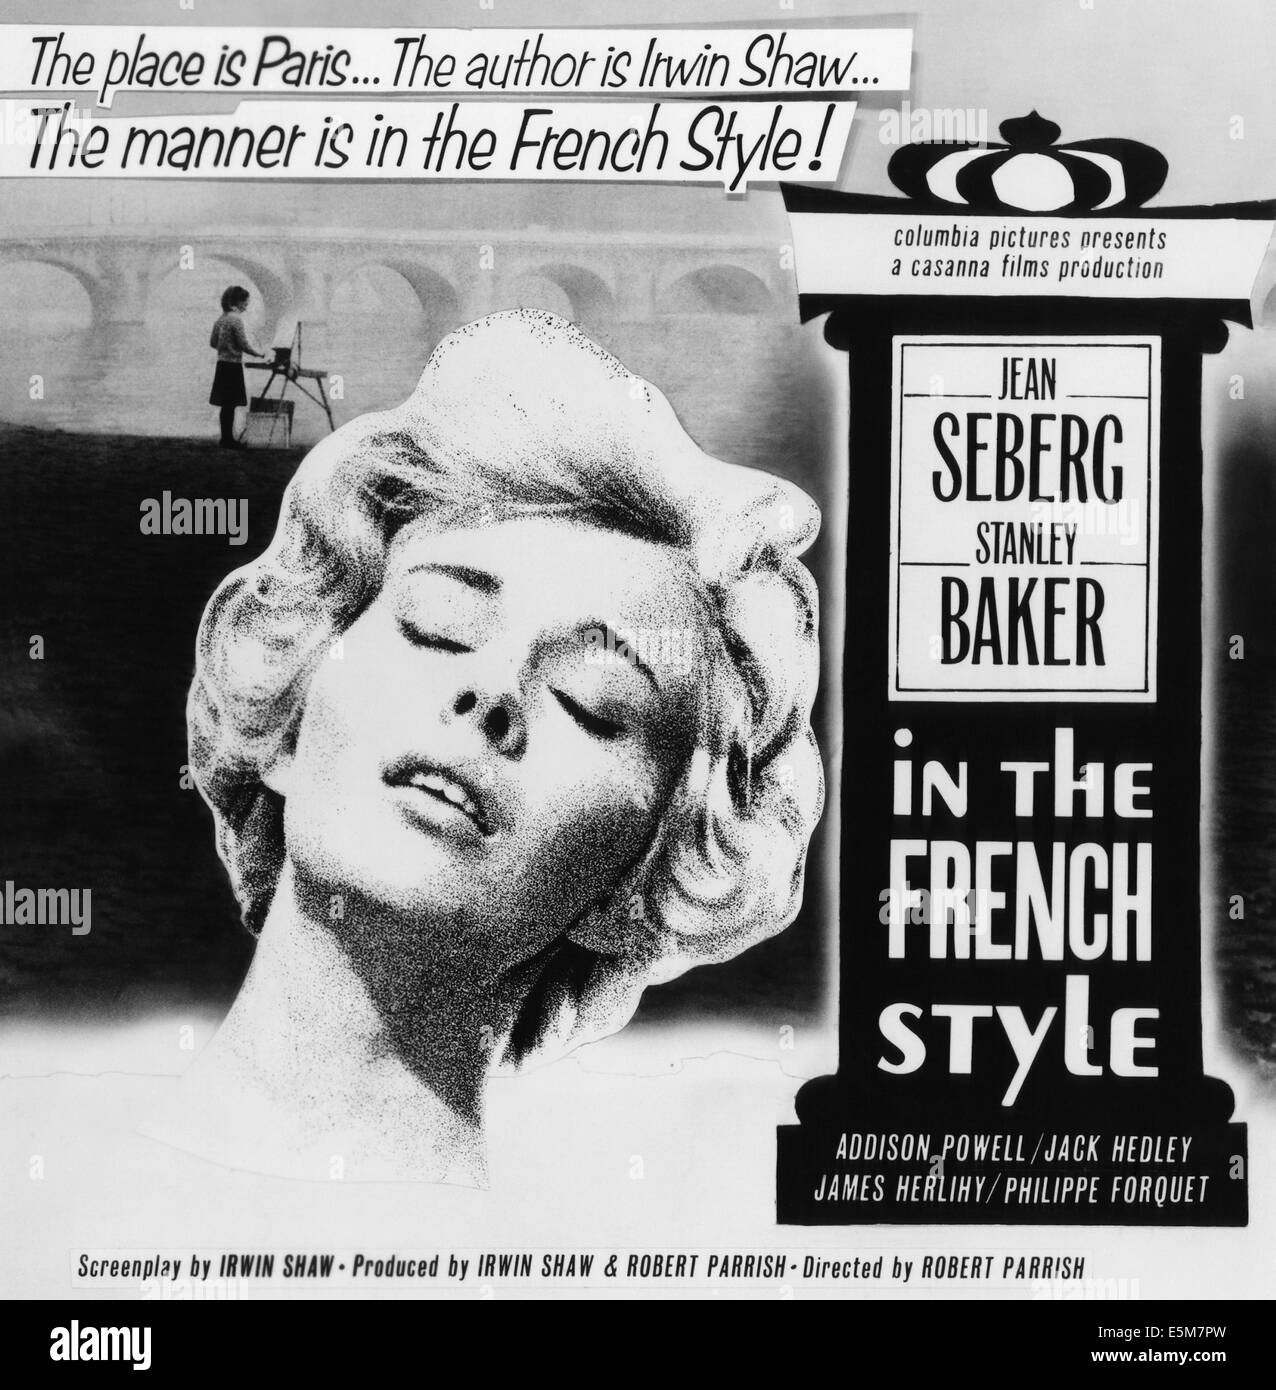 Dans le style français, Jean Seberg, Stanley Baker, 1963 Banque D'Images